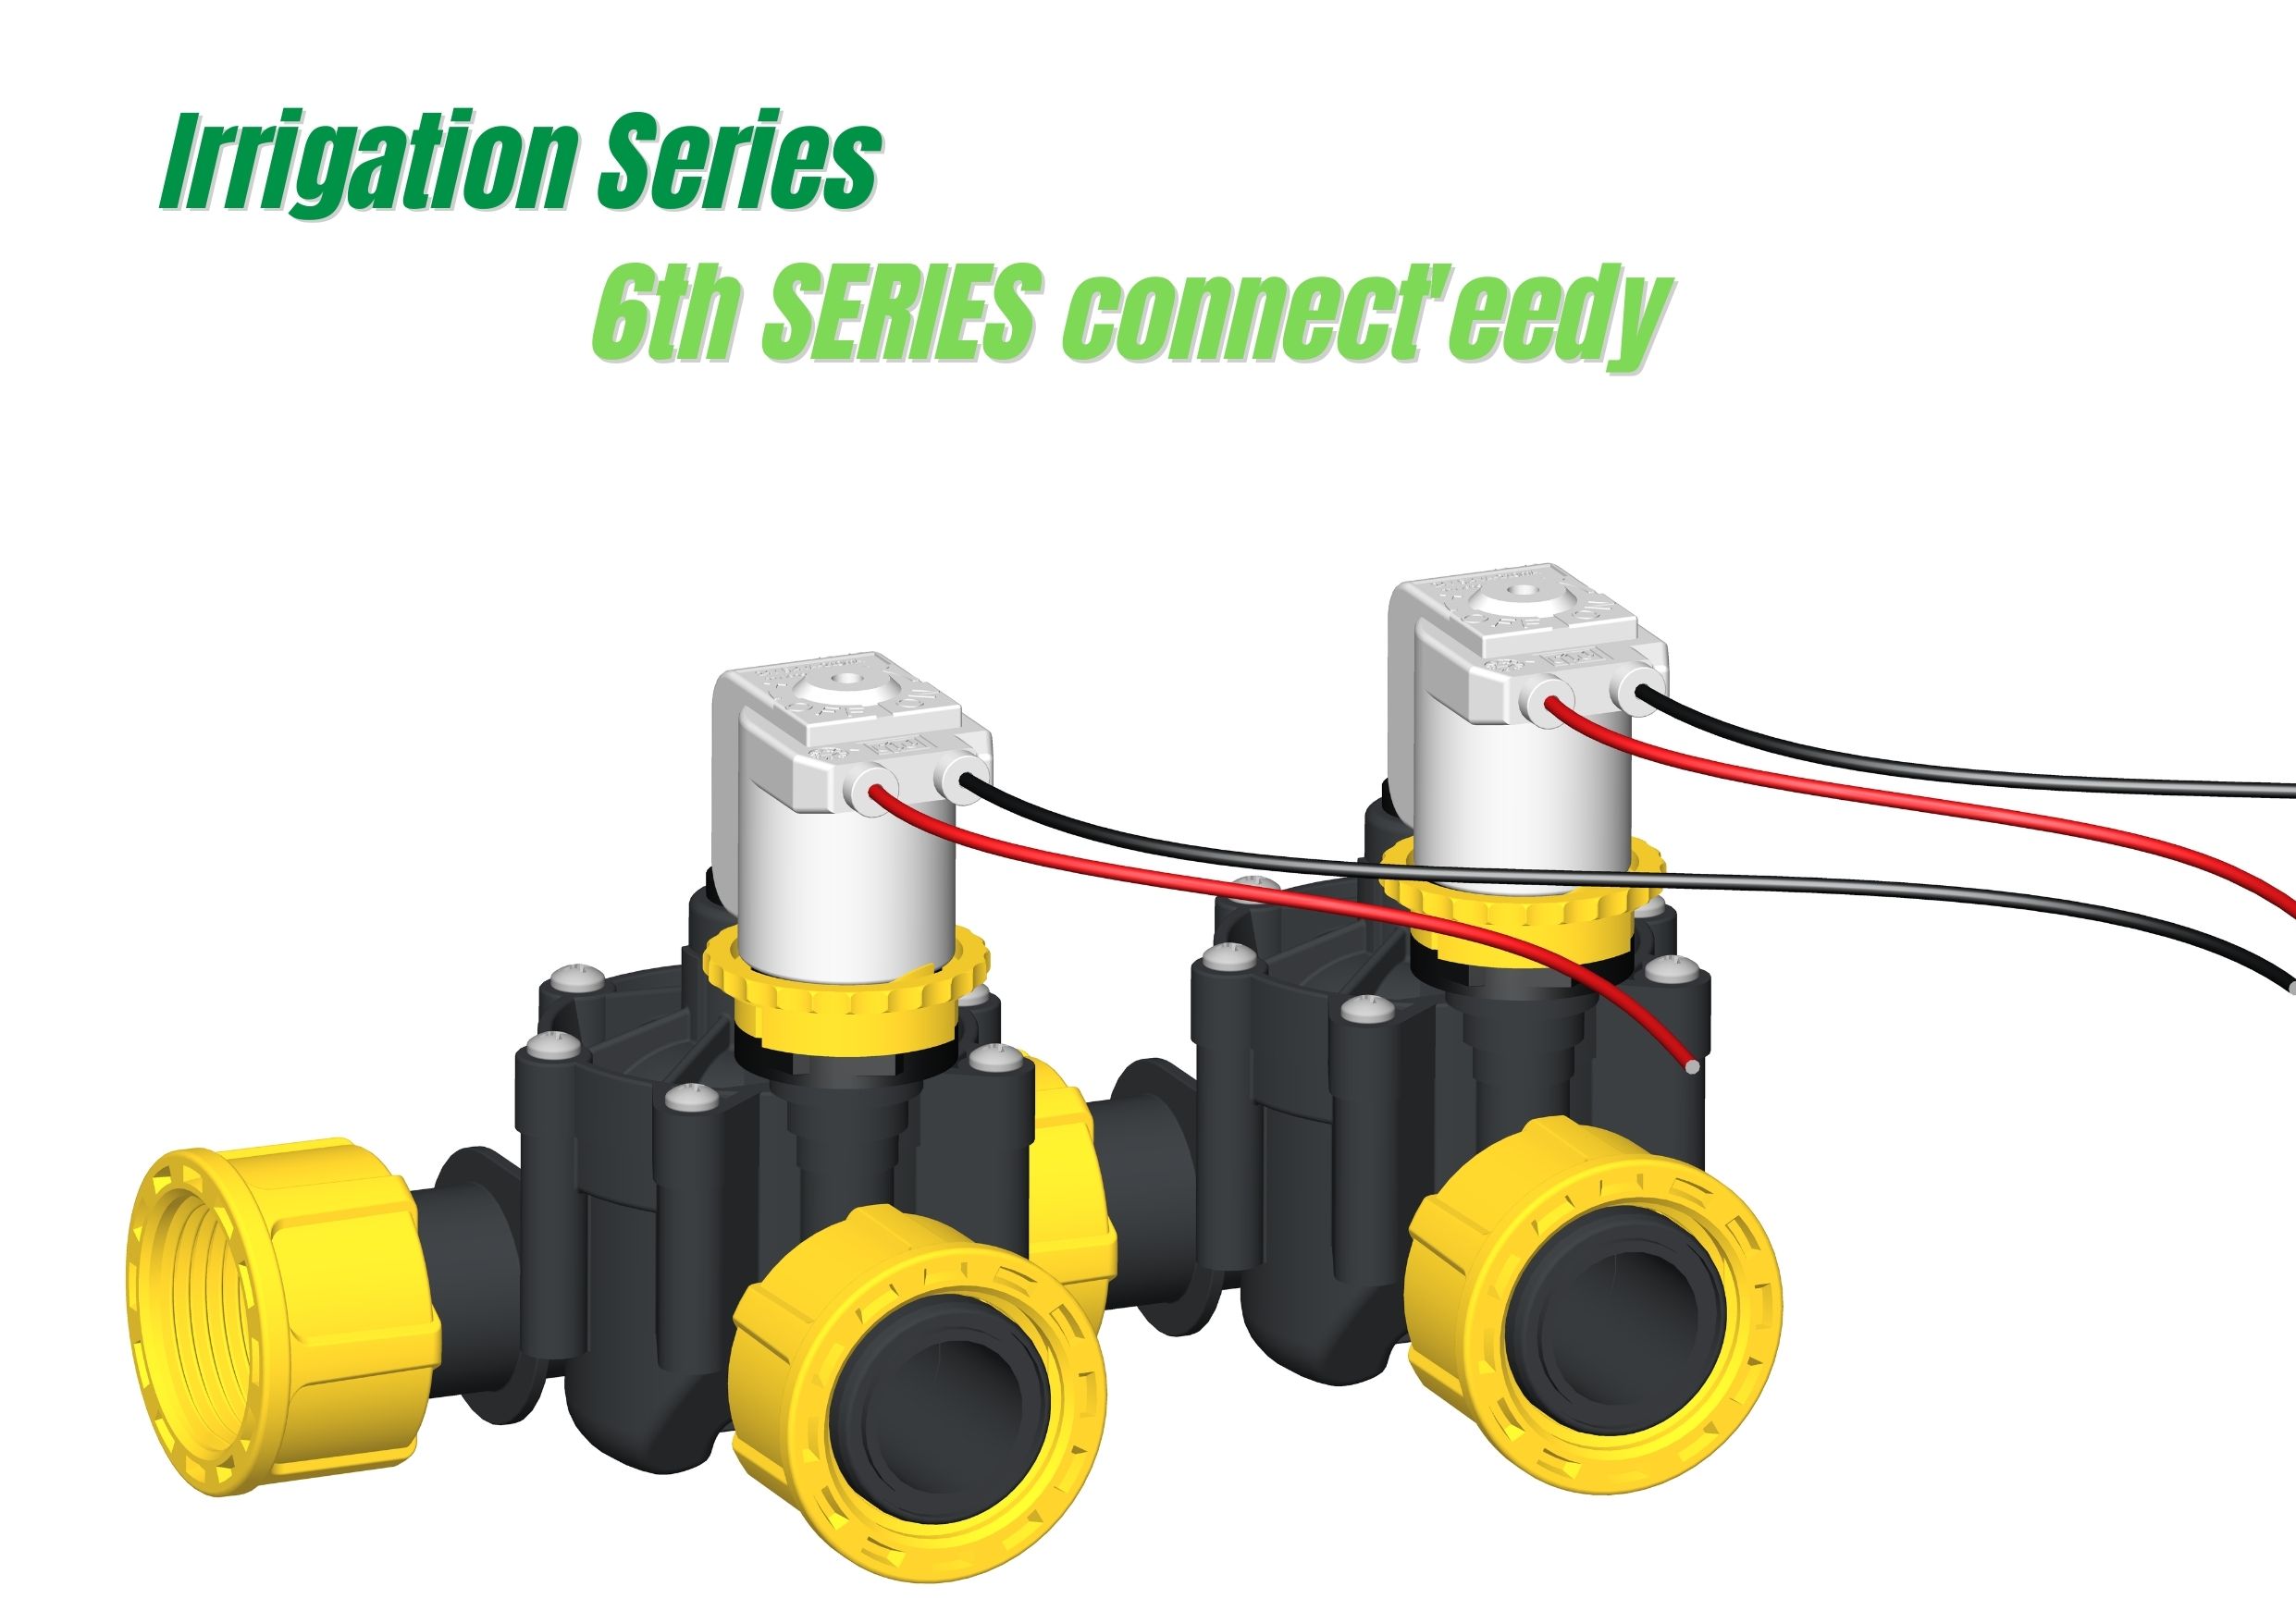 Entdecken Sie das neue Magnetventil  6th Series Connect'eedy - Modulares Magnetventil  für die Bewässerung  